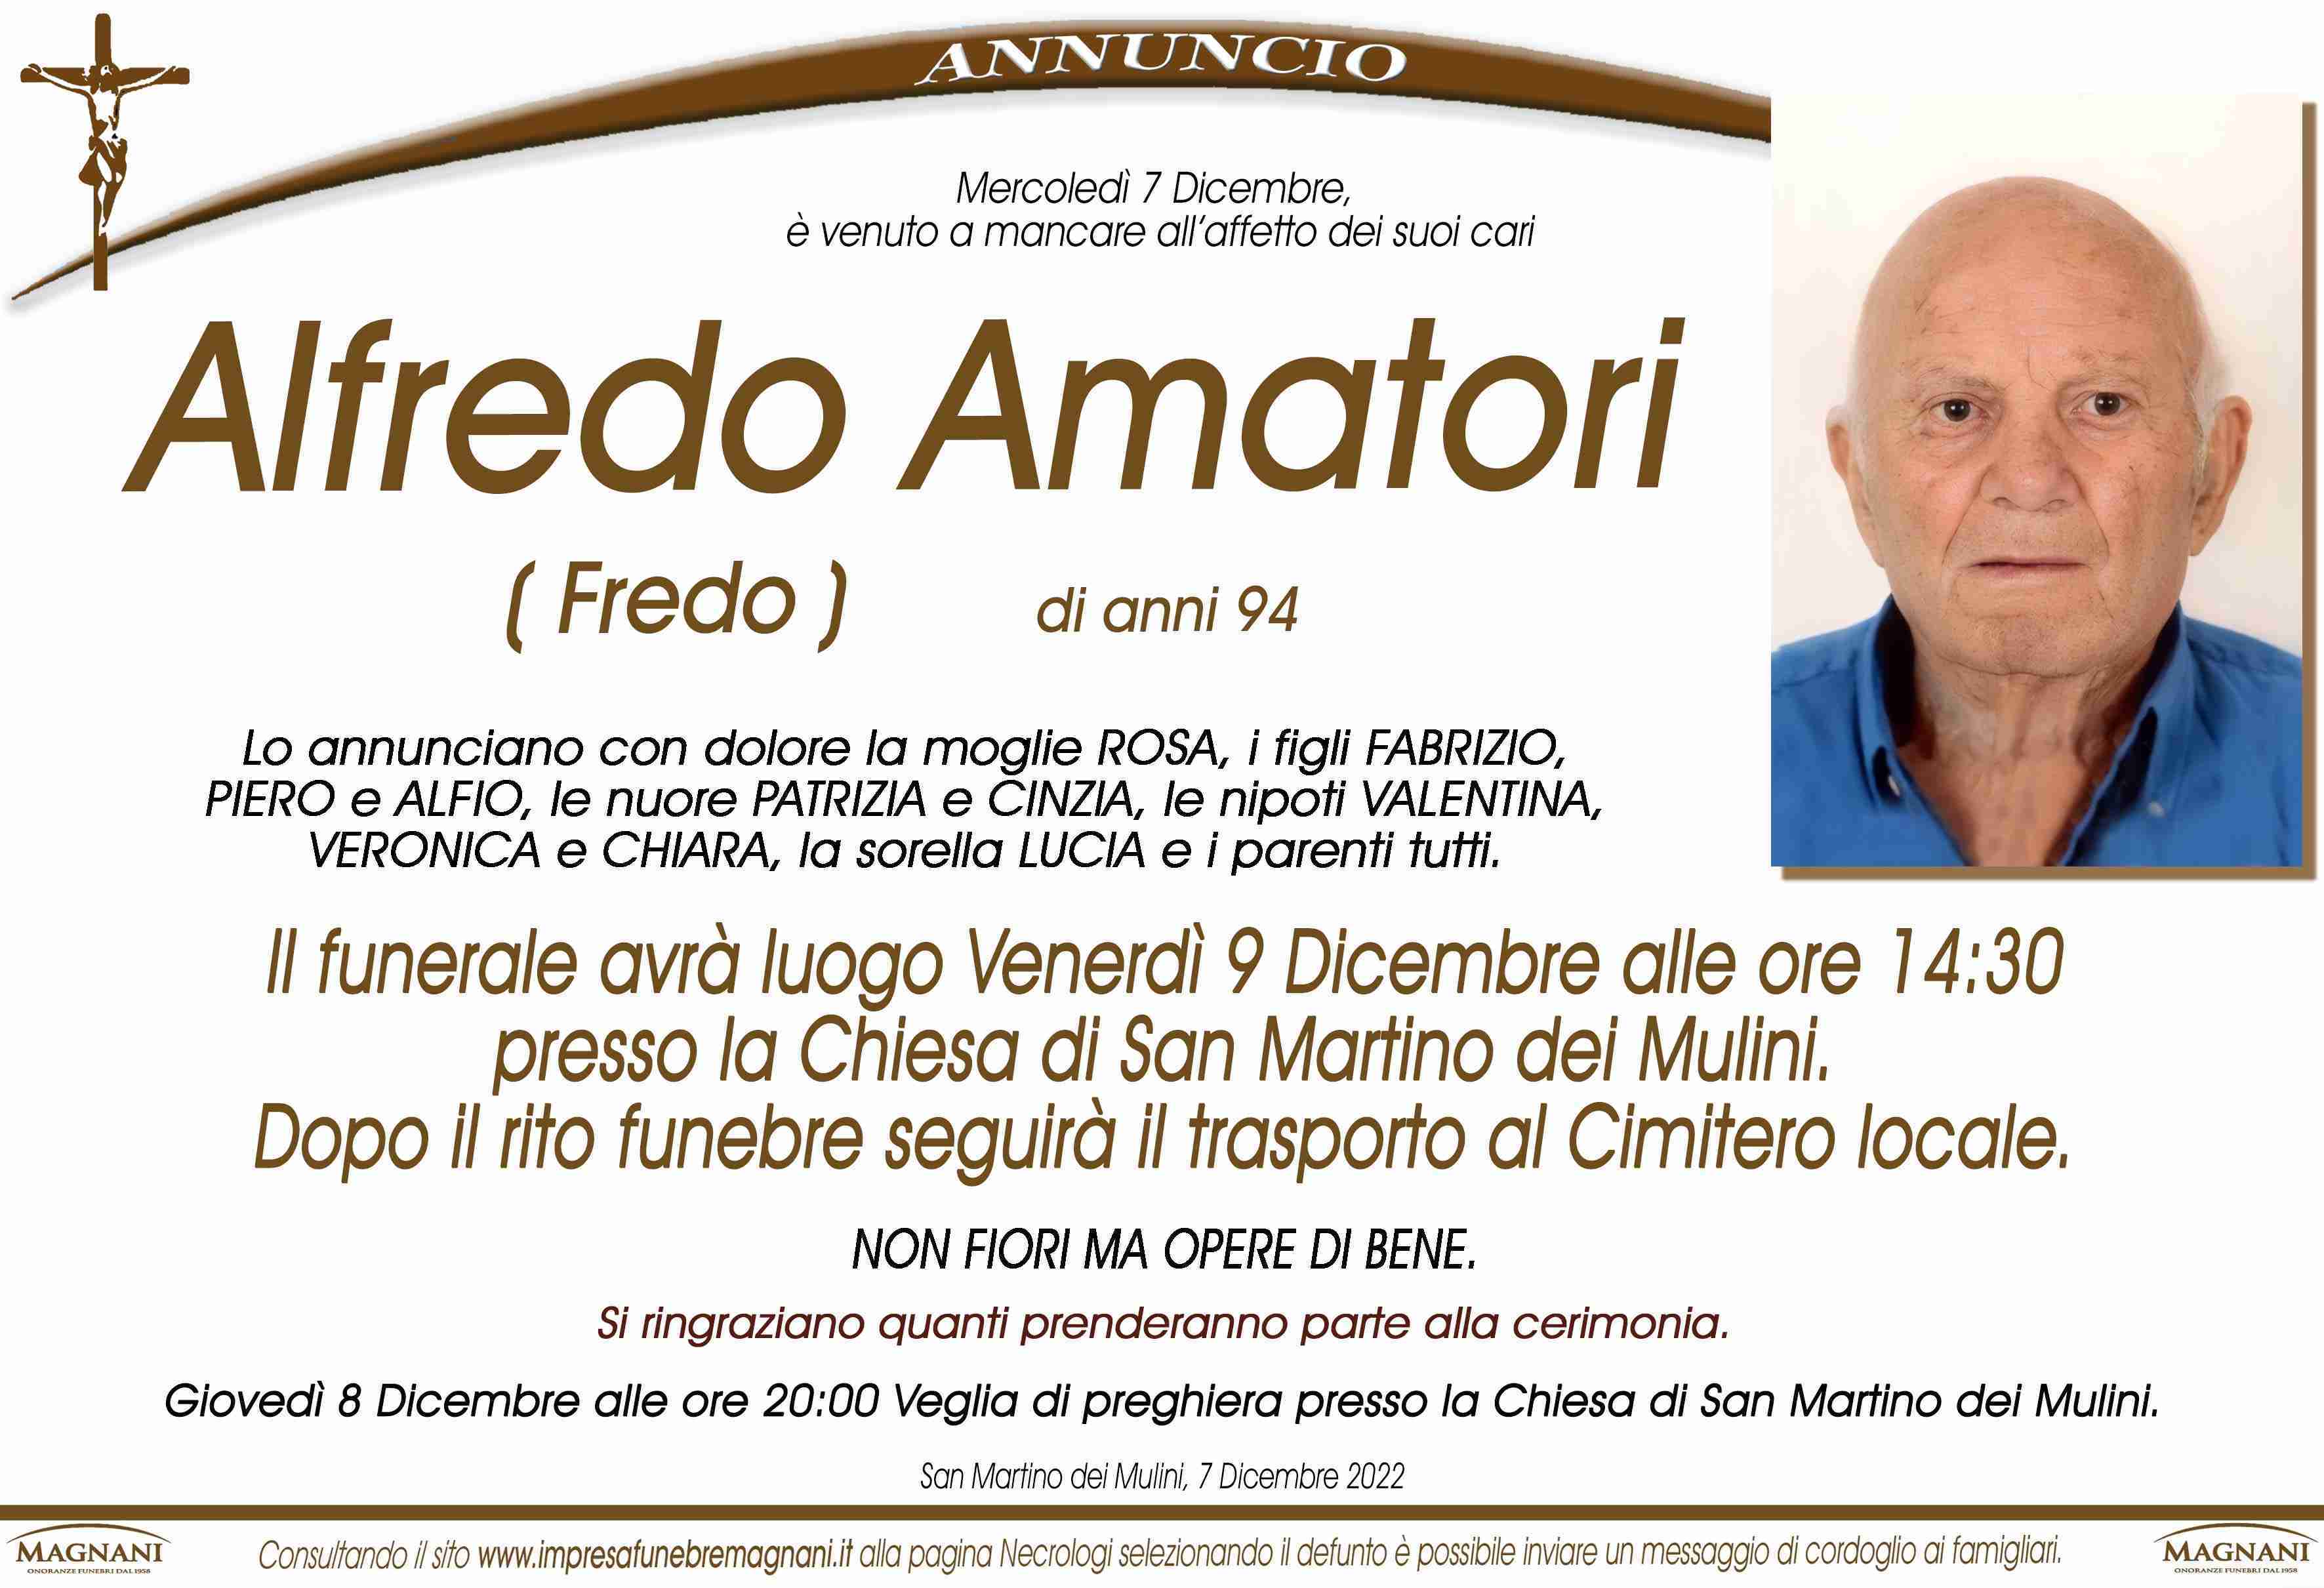 Alfredo Amatori